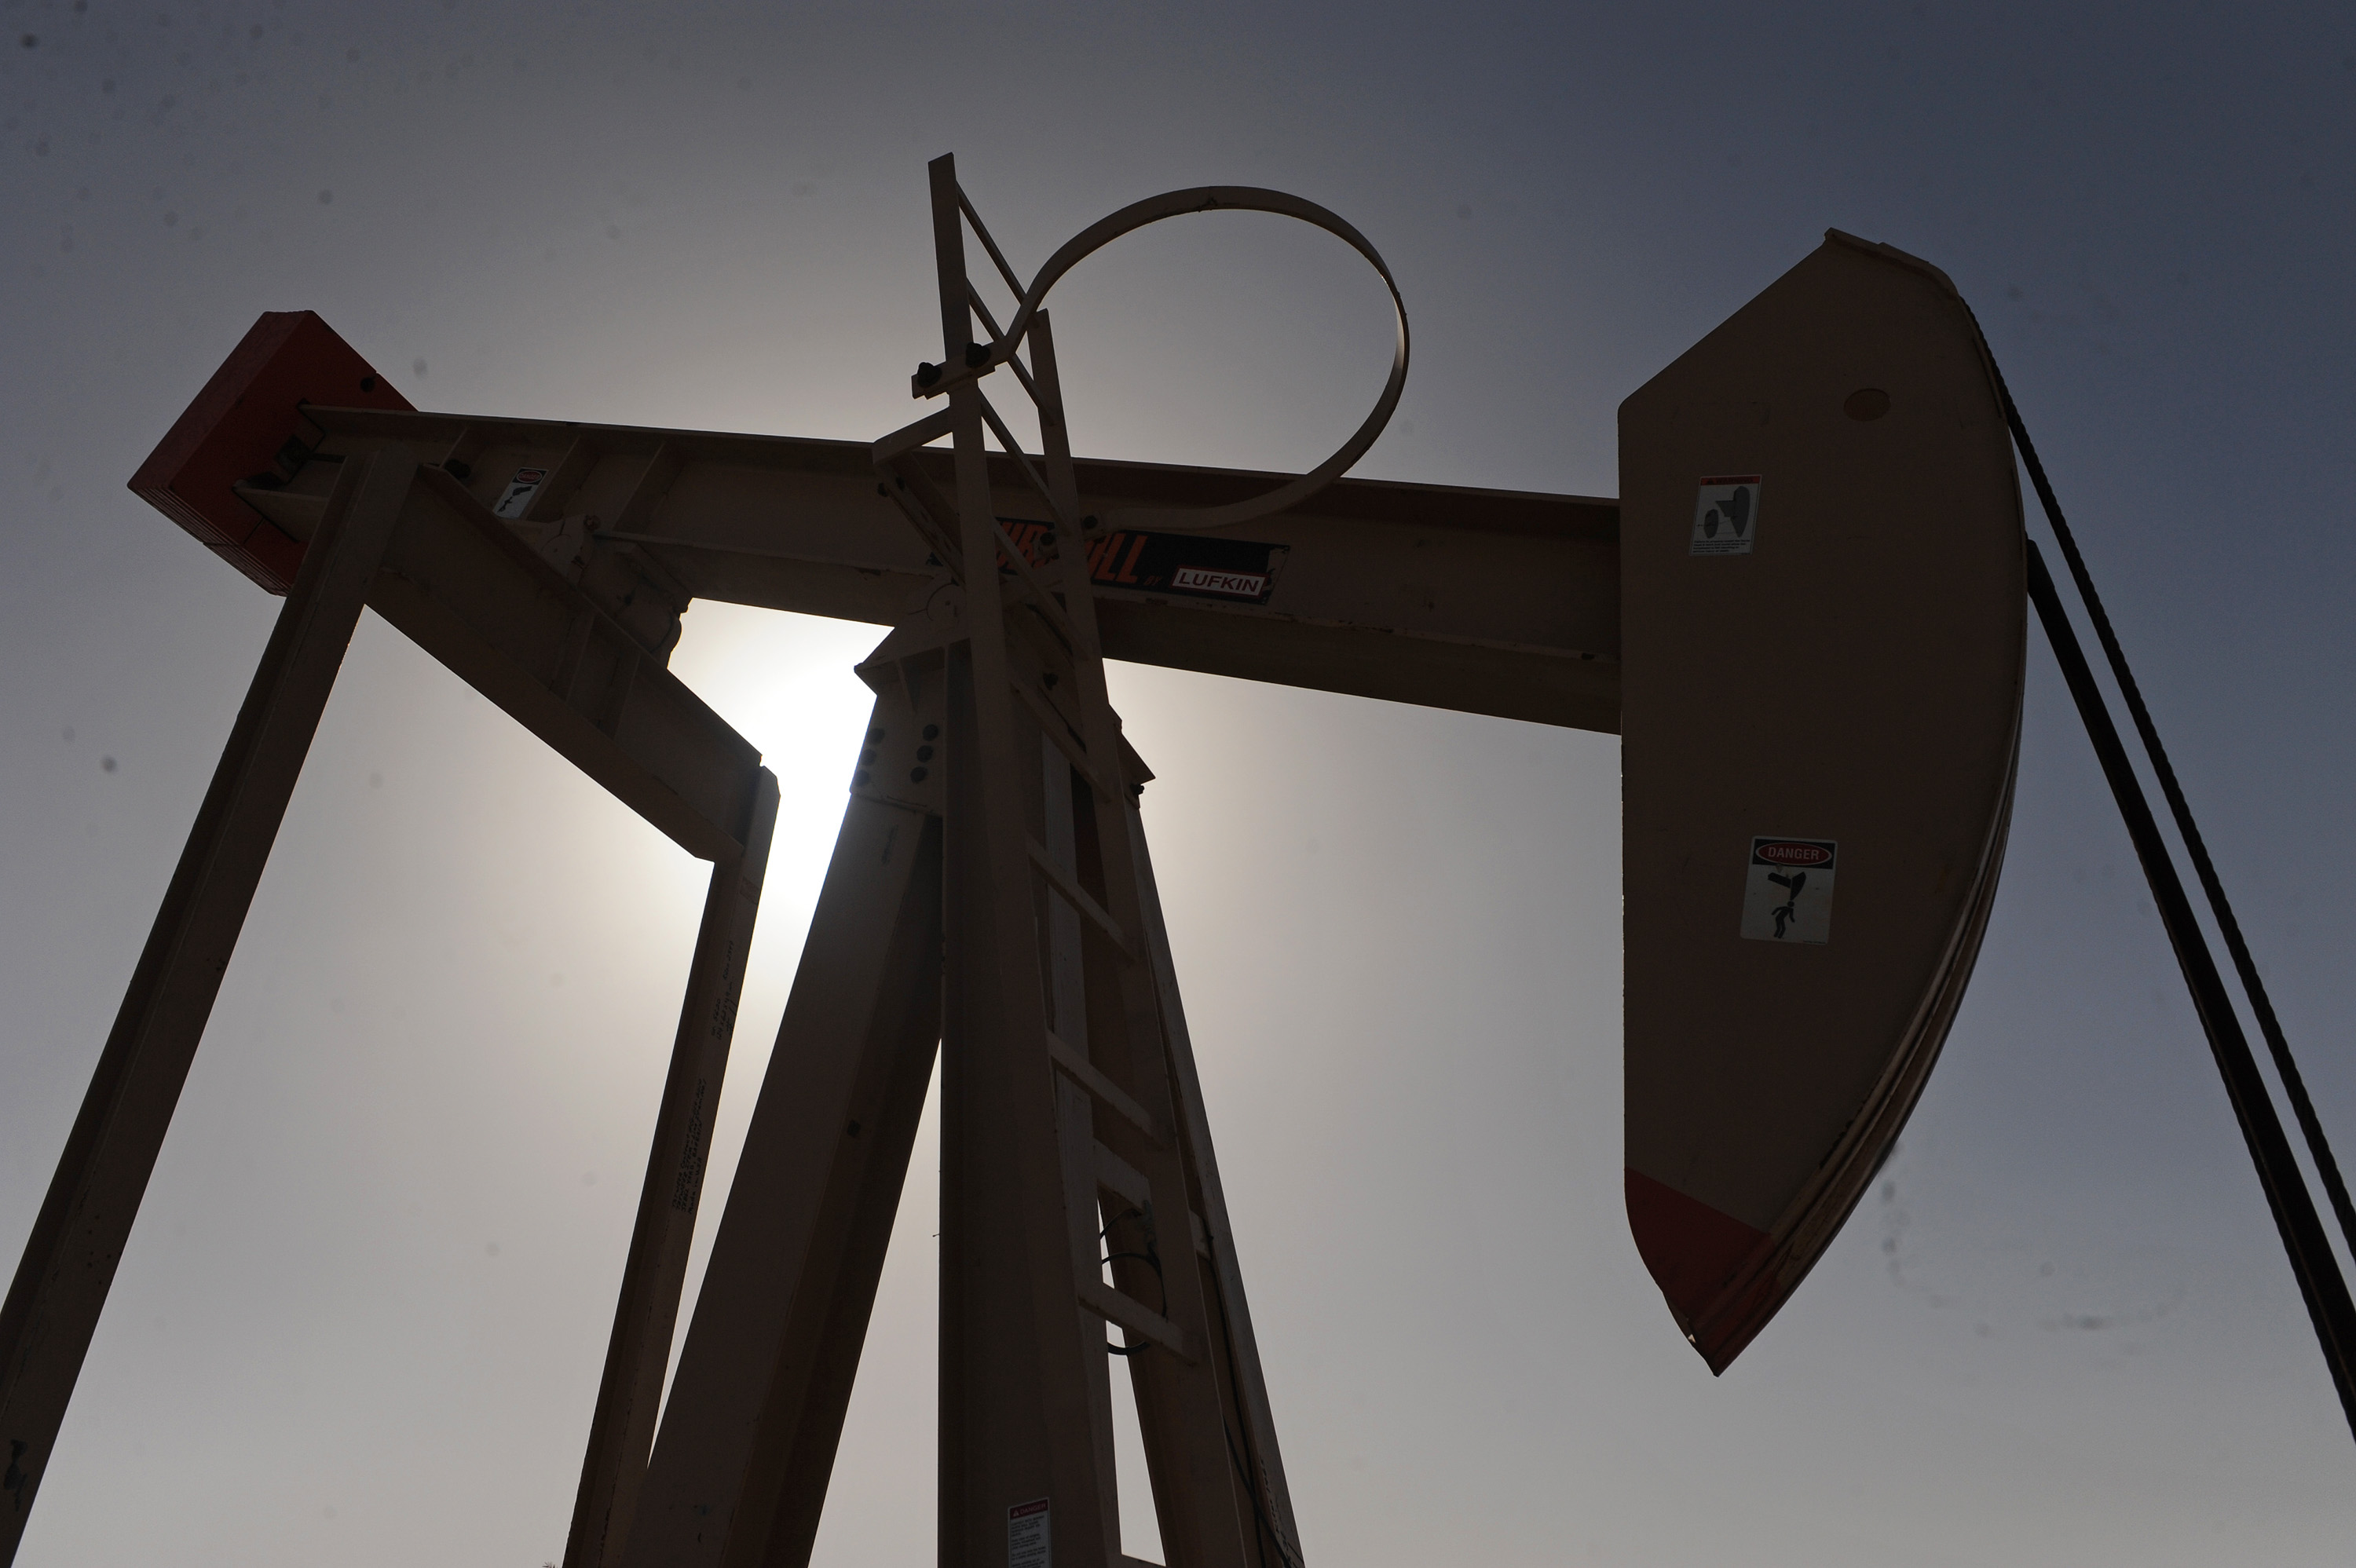 Oil steadies below $49 as US drilling threatens longer glut